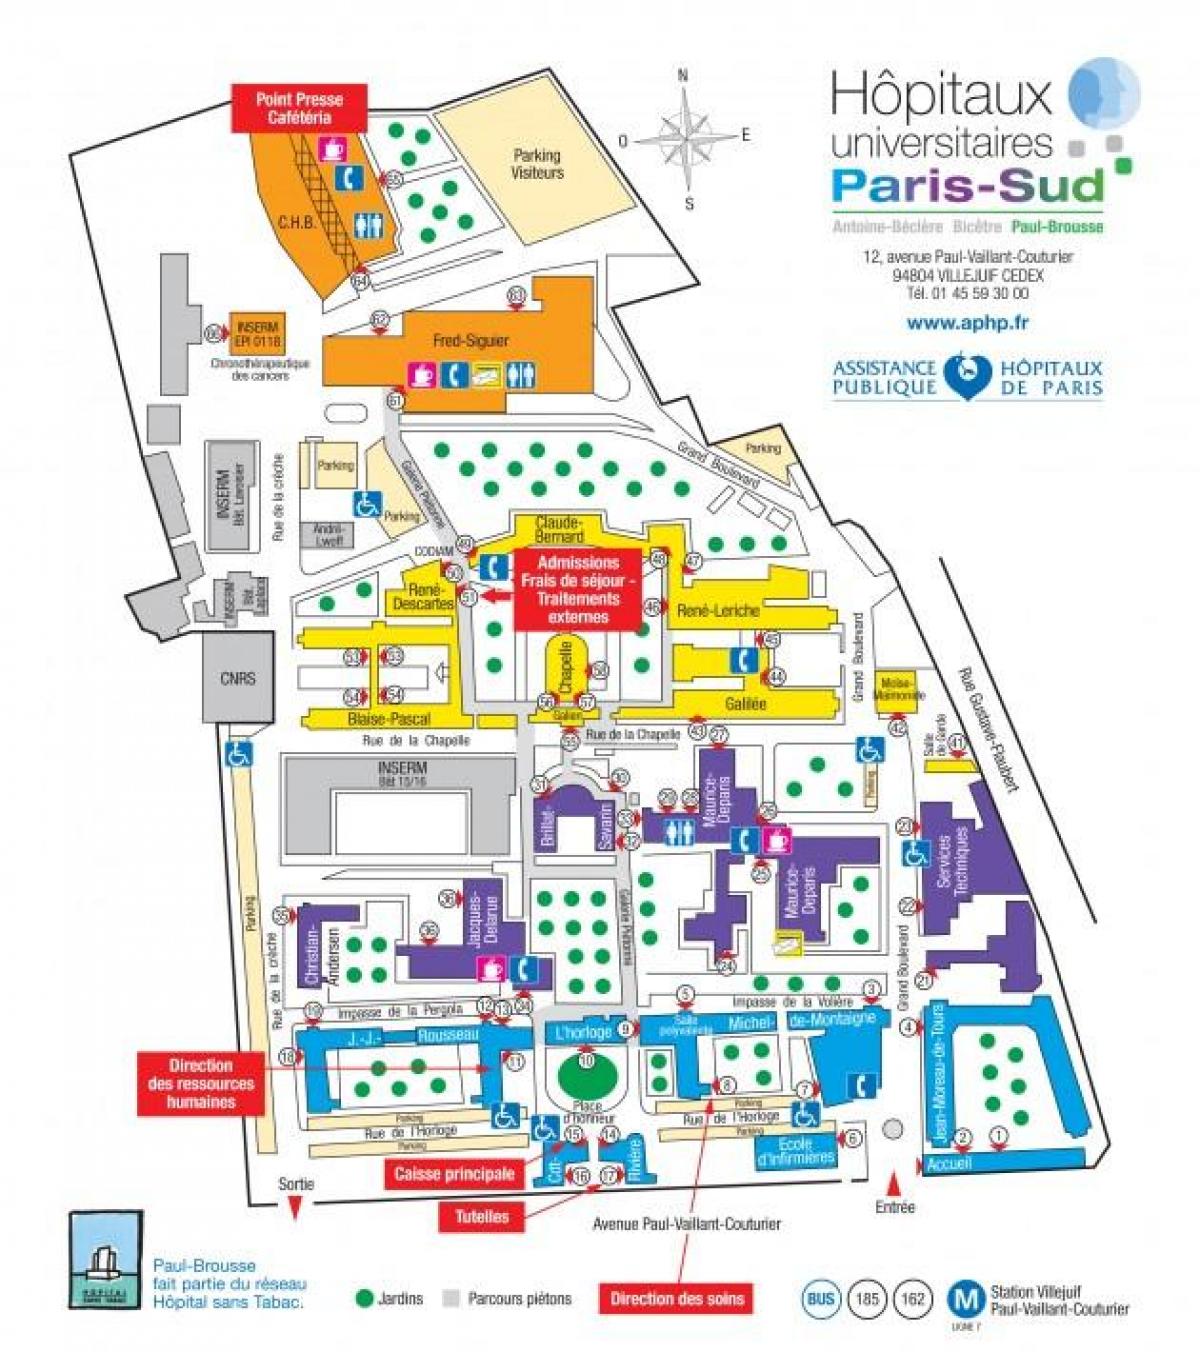 Kaart van Paulus-Brousse hospitaal